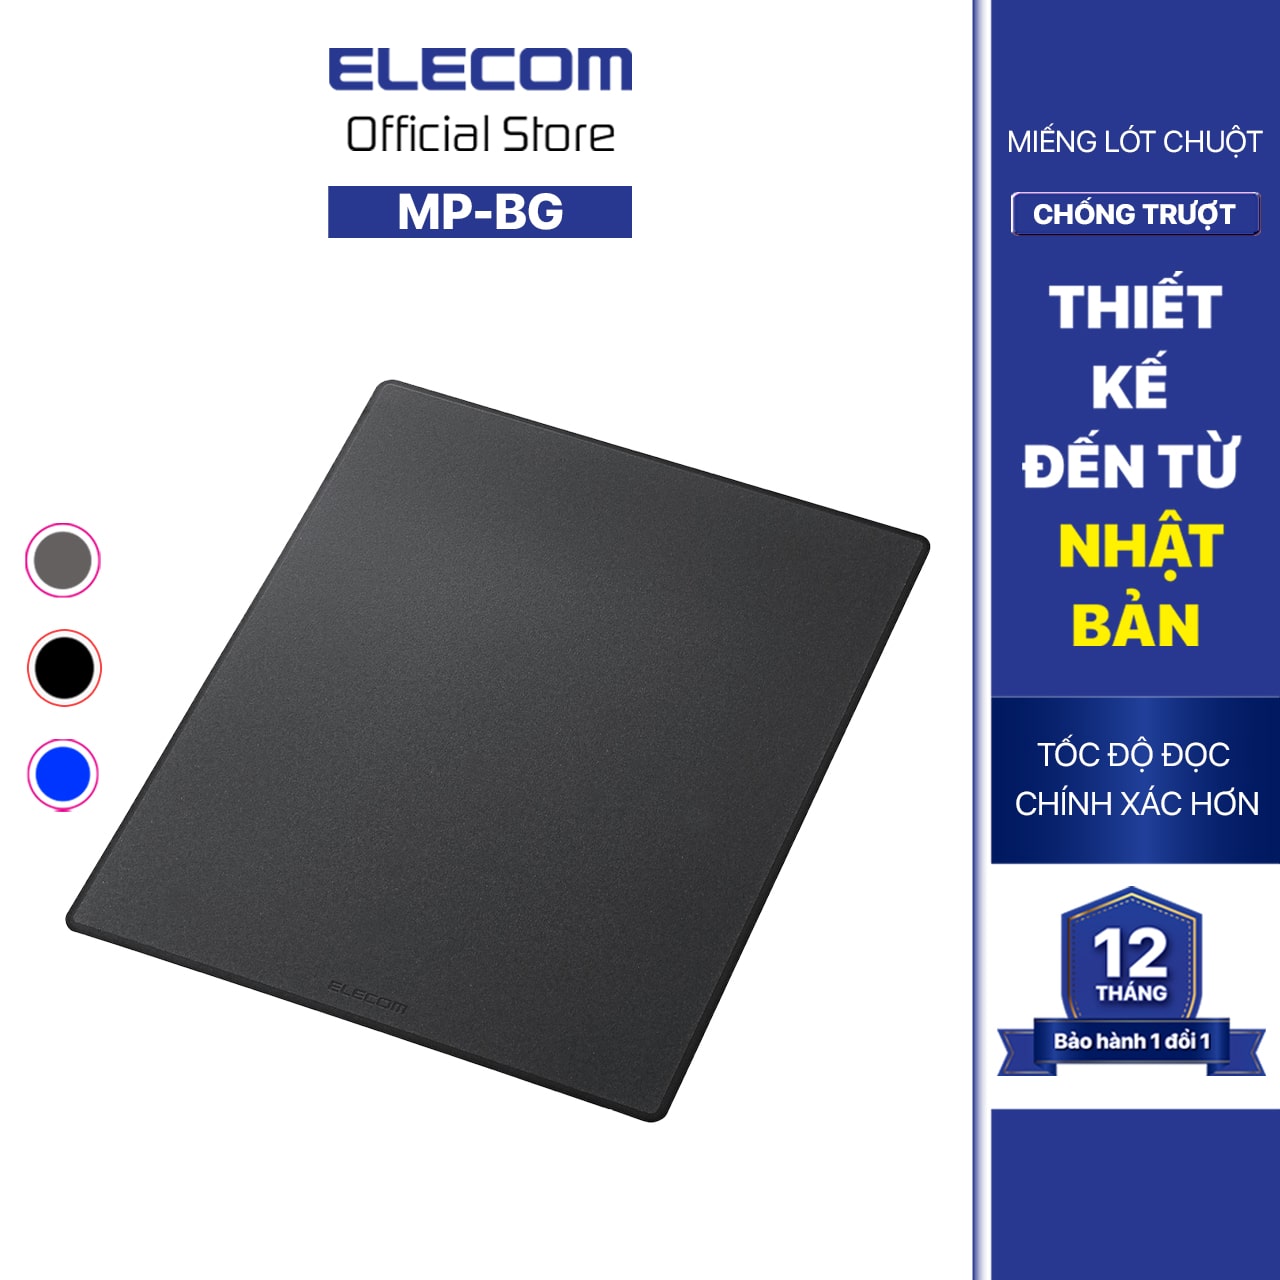 Miếng Lót Chuột ELECOM MP-BG size 15cm x 18cm Hàng Chính Hãng